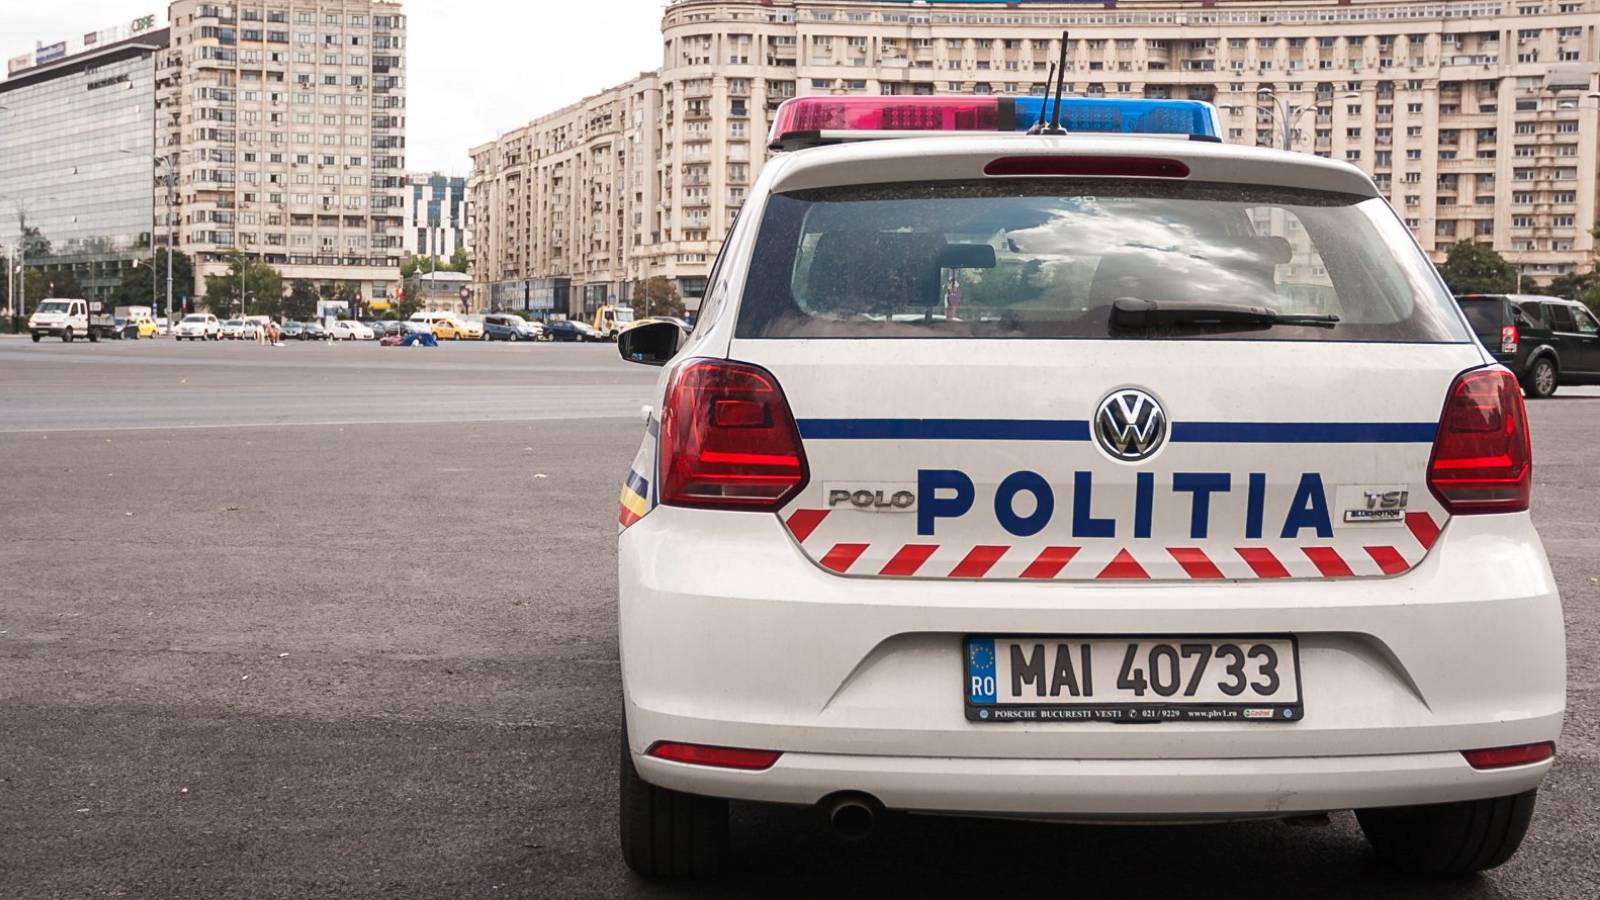 Rumänische Polizei verhängt Geldstrafen am 7. März